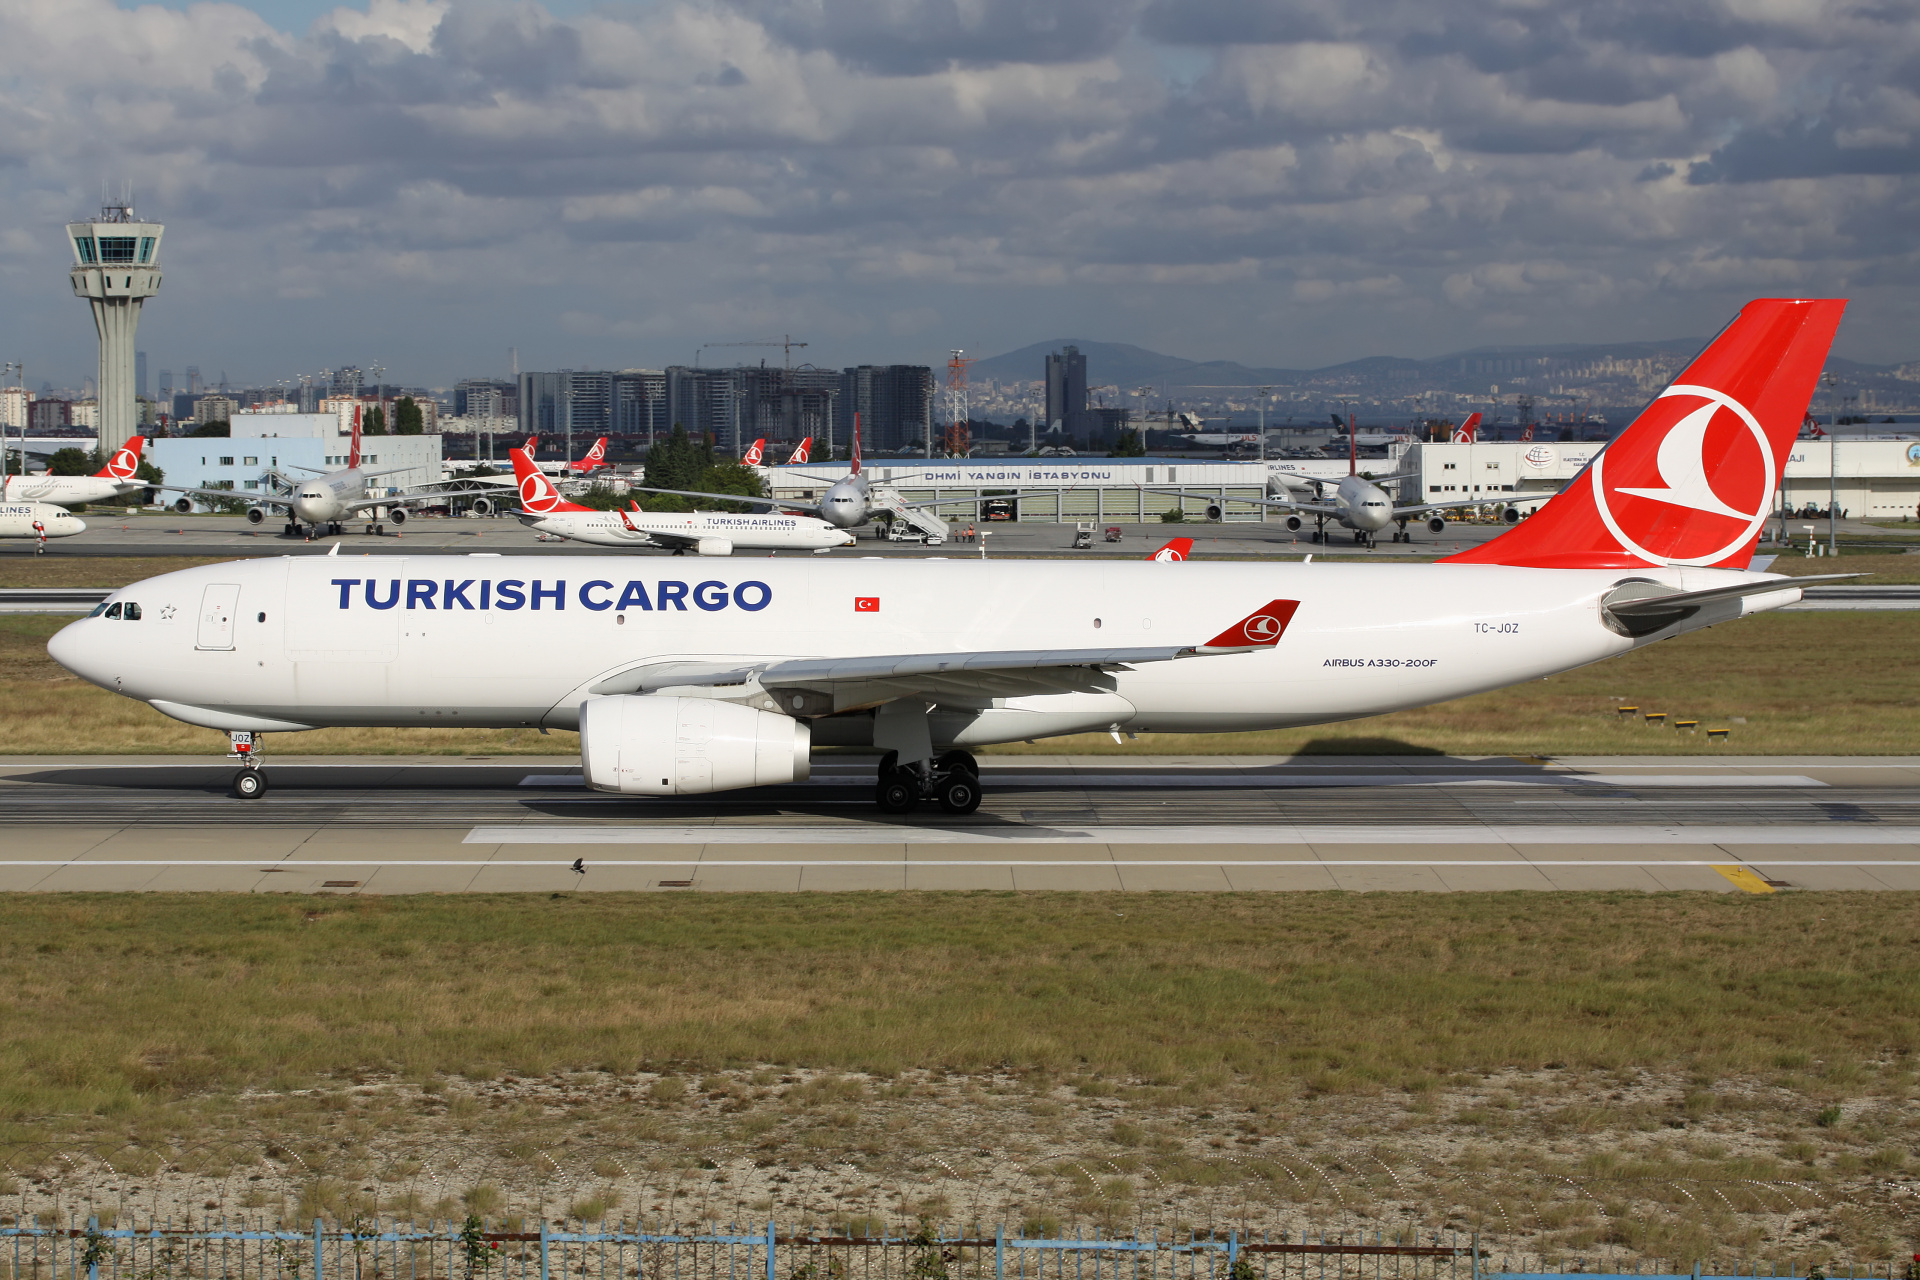 TC-JOZ, Turkish Cargo (Samoloty » Port Lotniczy im. Atatürka w Stambule » Airbus A330-200F)